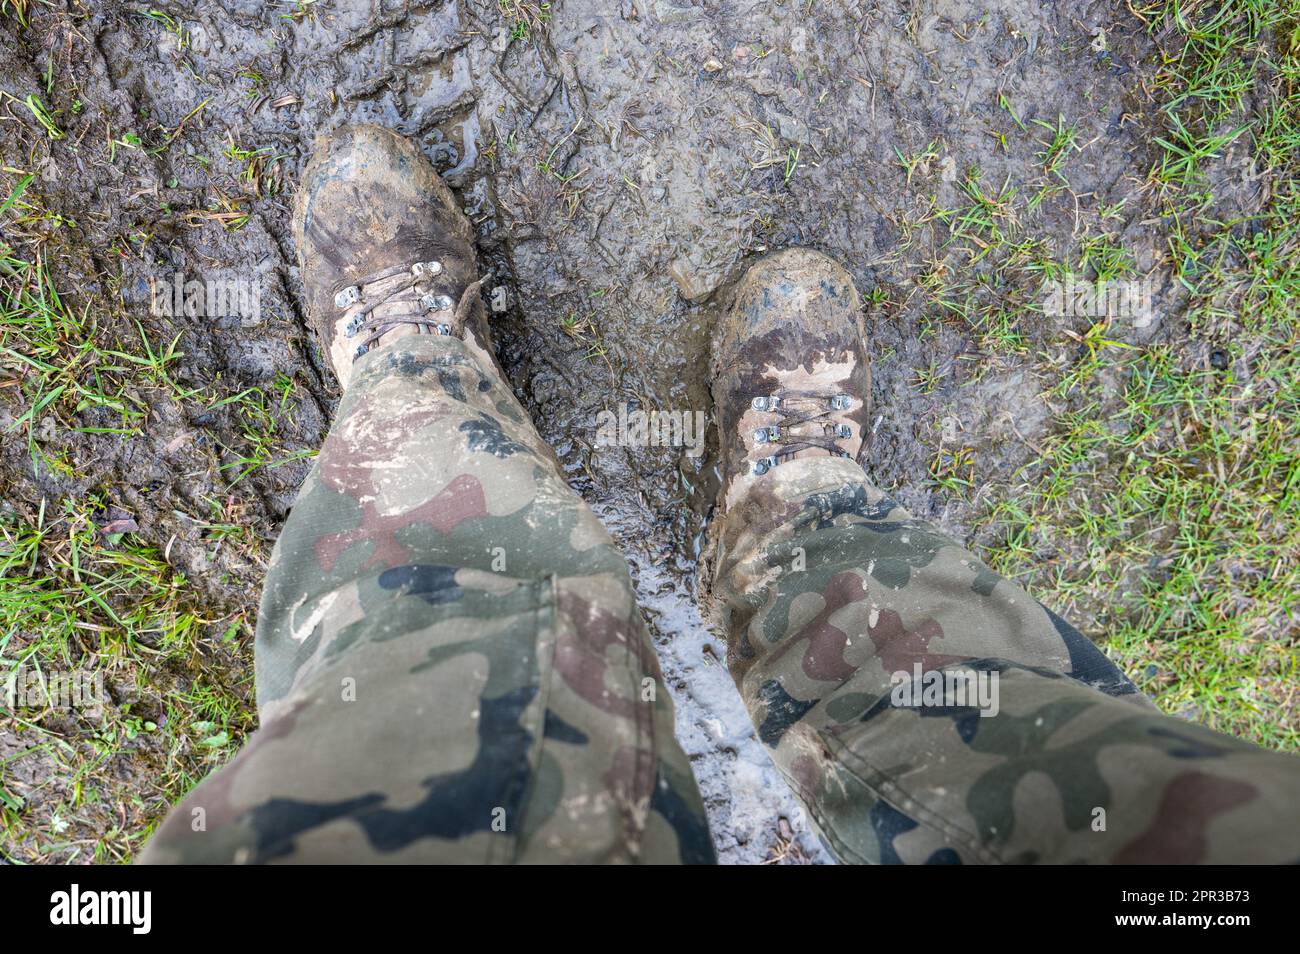 Schmutzige Soldaten-Stiefel nach den Übungen im Schlamm. Stockfoto